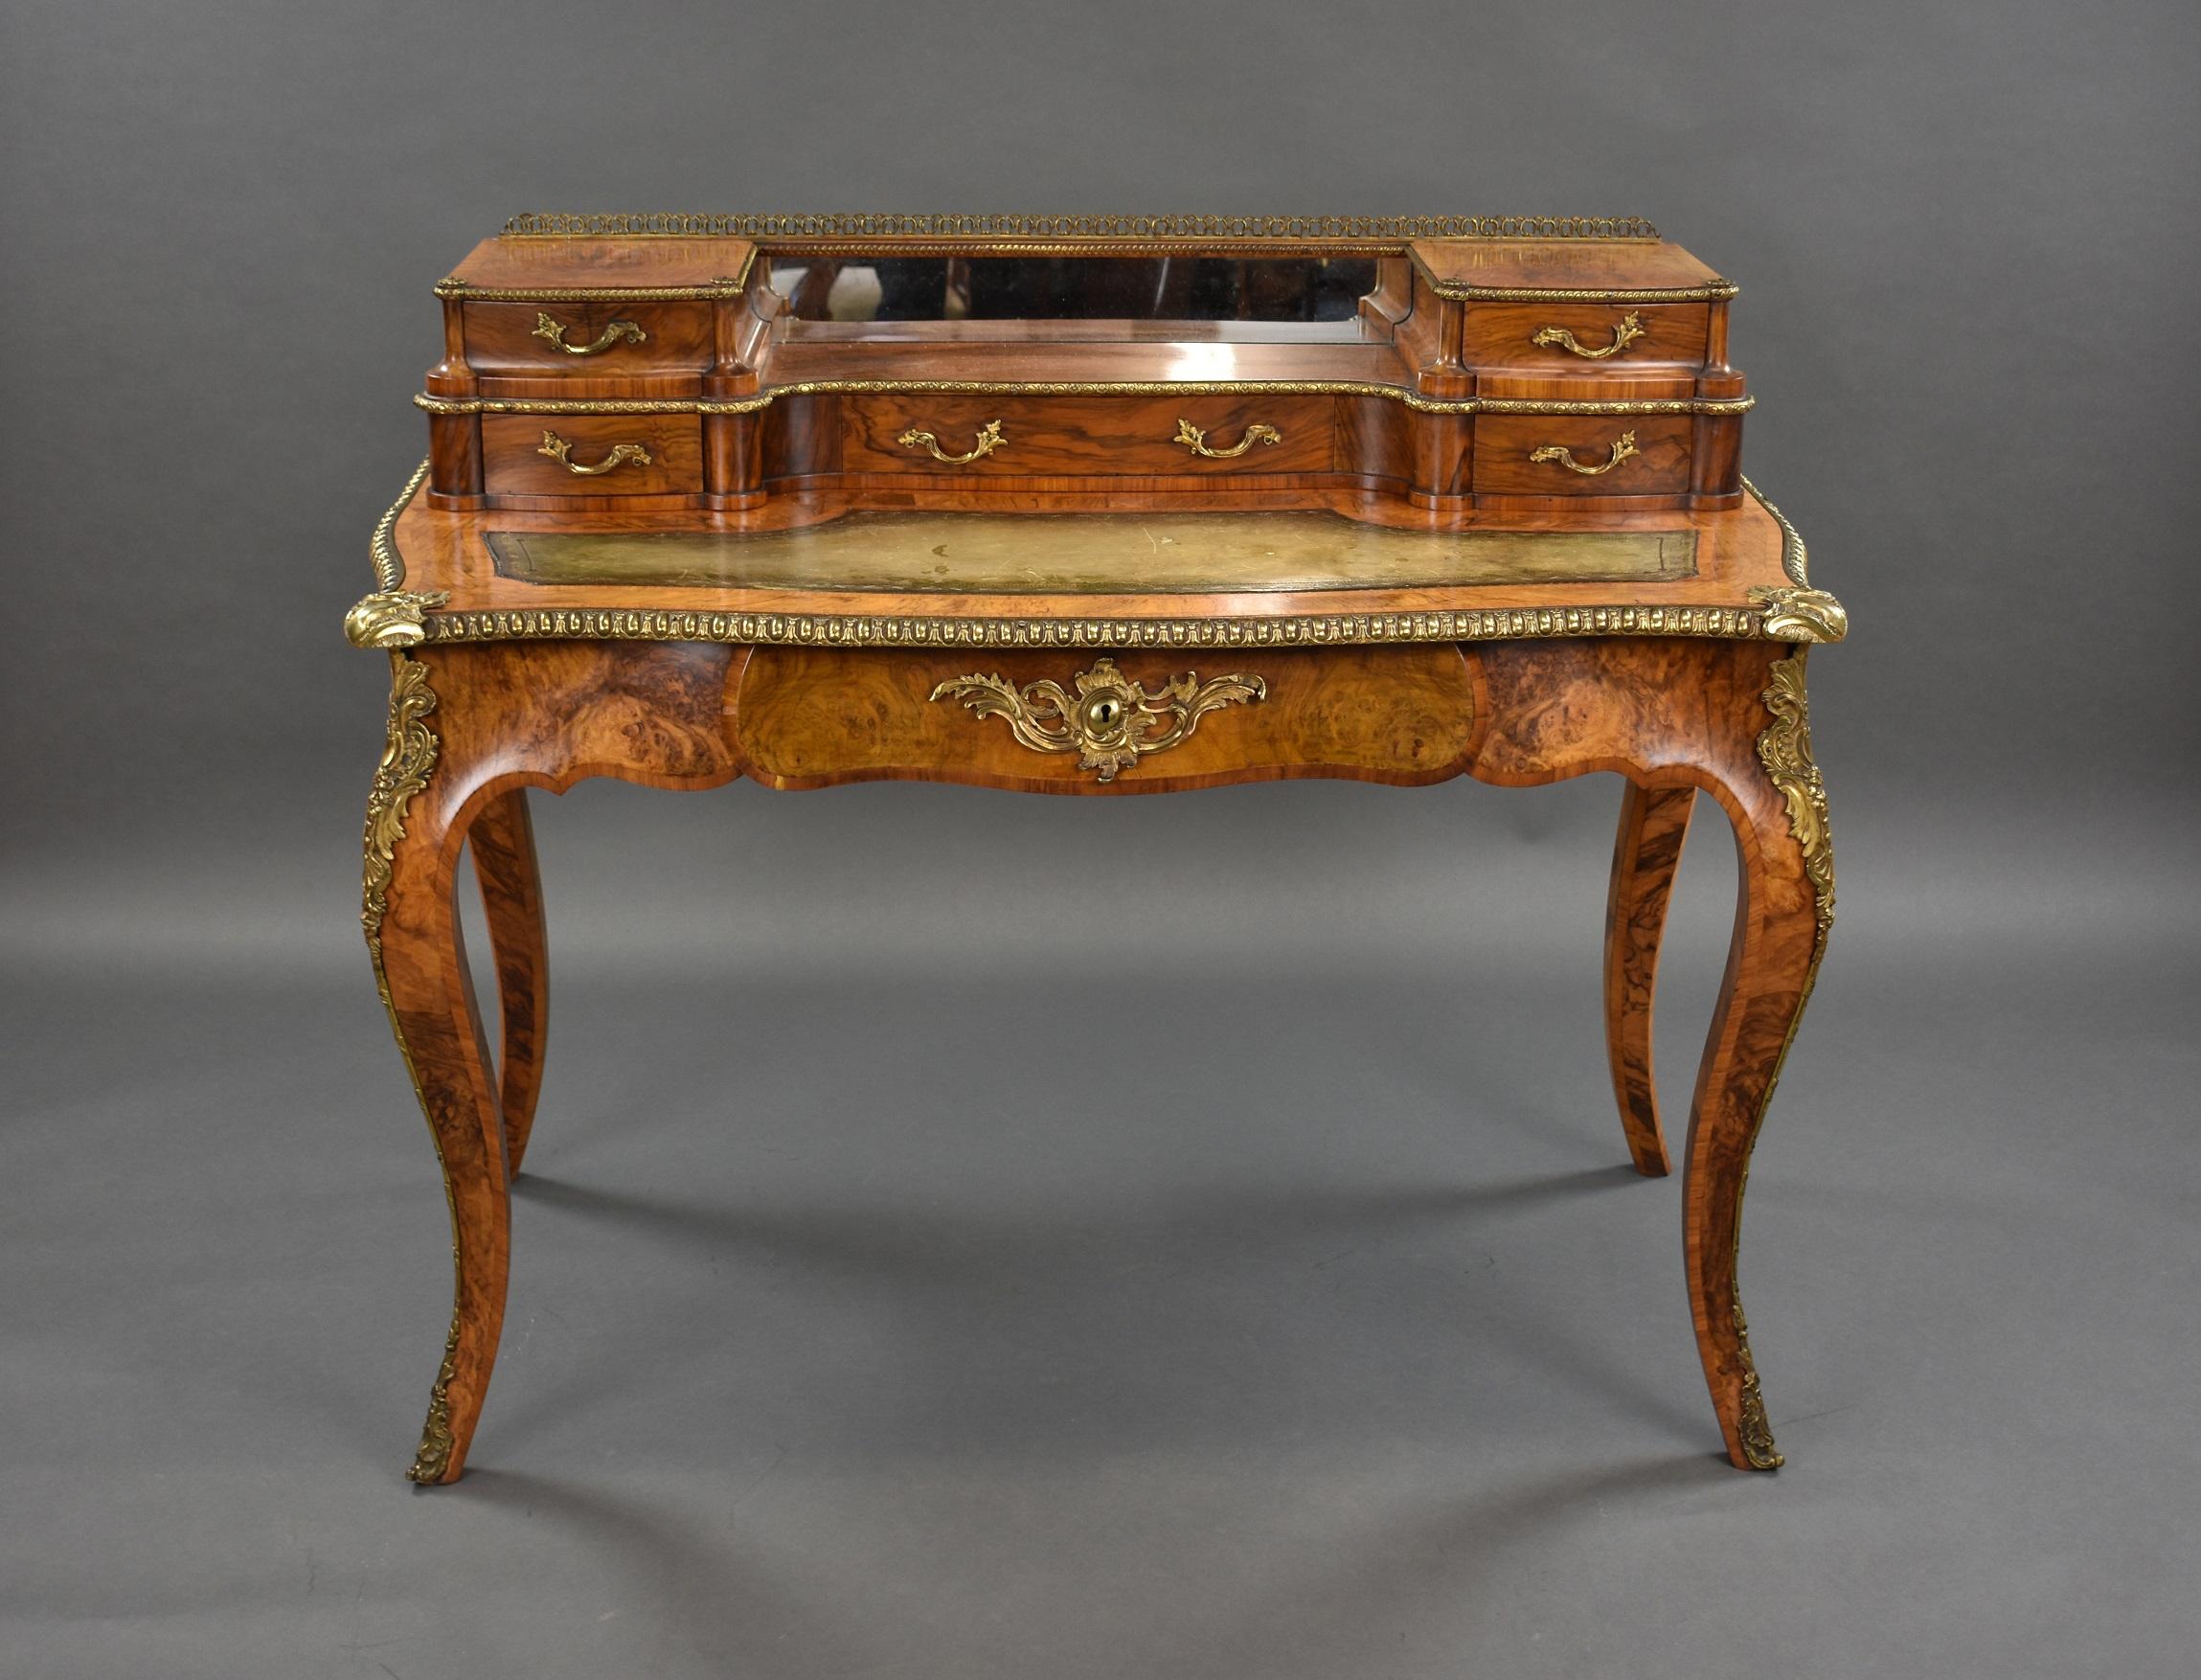 Zum Verkauf steht ein hochwertiger viktorianischer Schreibtisch aus Wurzelnussholz mit vergoldeten Messingbeschlägen. Die erhöhte Rückwand mit einer durchbrochenen Galerie über einem Spiegel ist mit fünf Schubladen ausgestattet, darüber eine